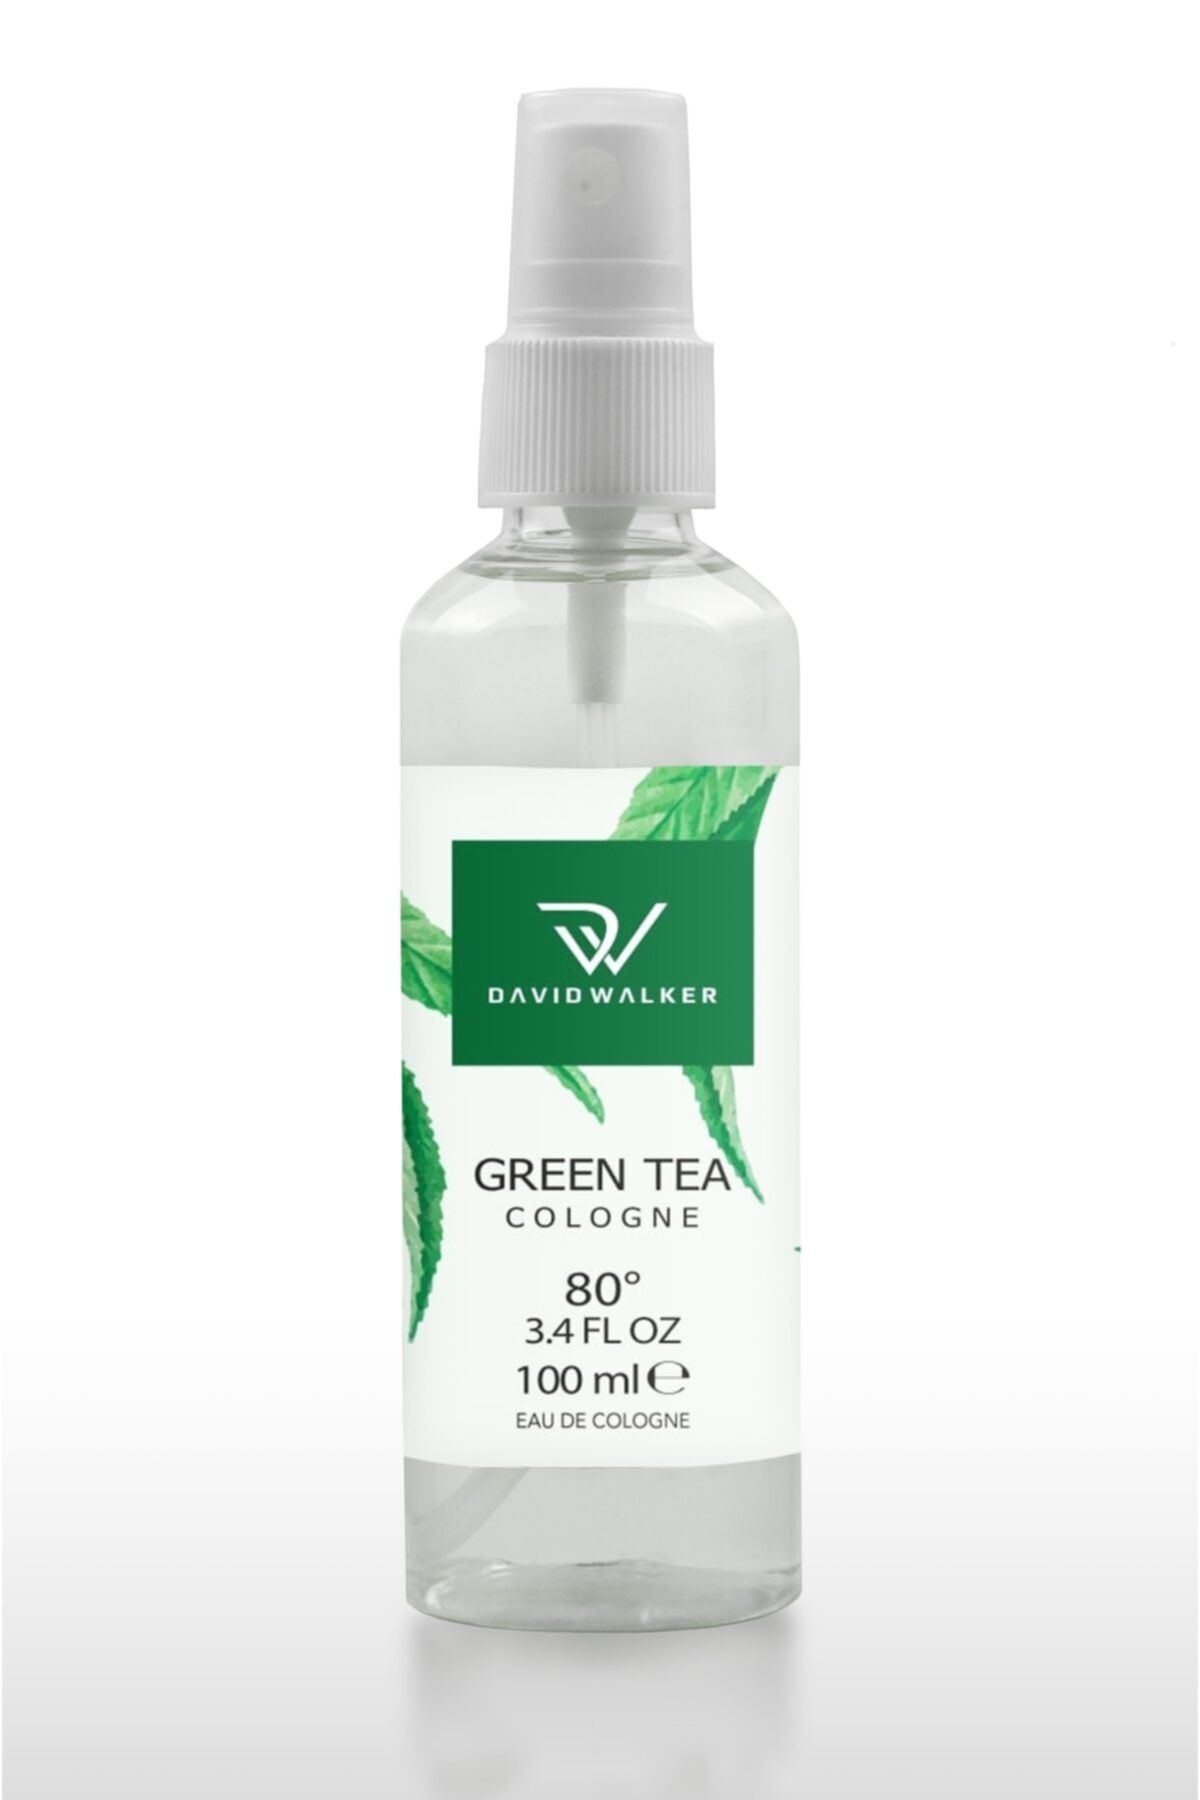 David Walker Klasik Yeşil Çay 100ml 80° Beyaz Plastik Sprey Kolonya - Classıc Grean Tea Lemon 100 ml 80° Cologne